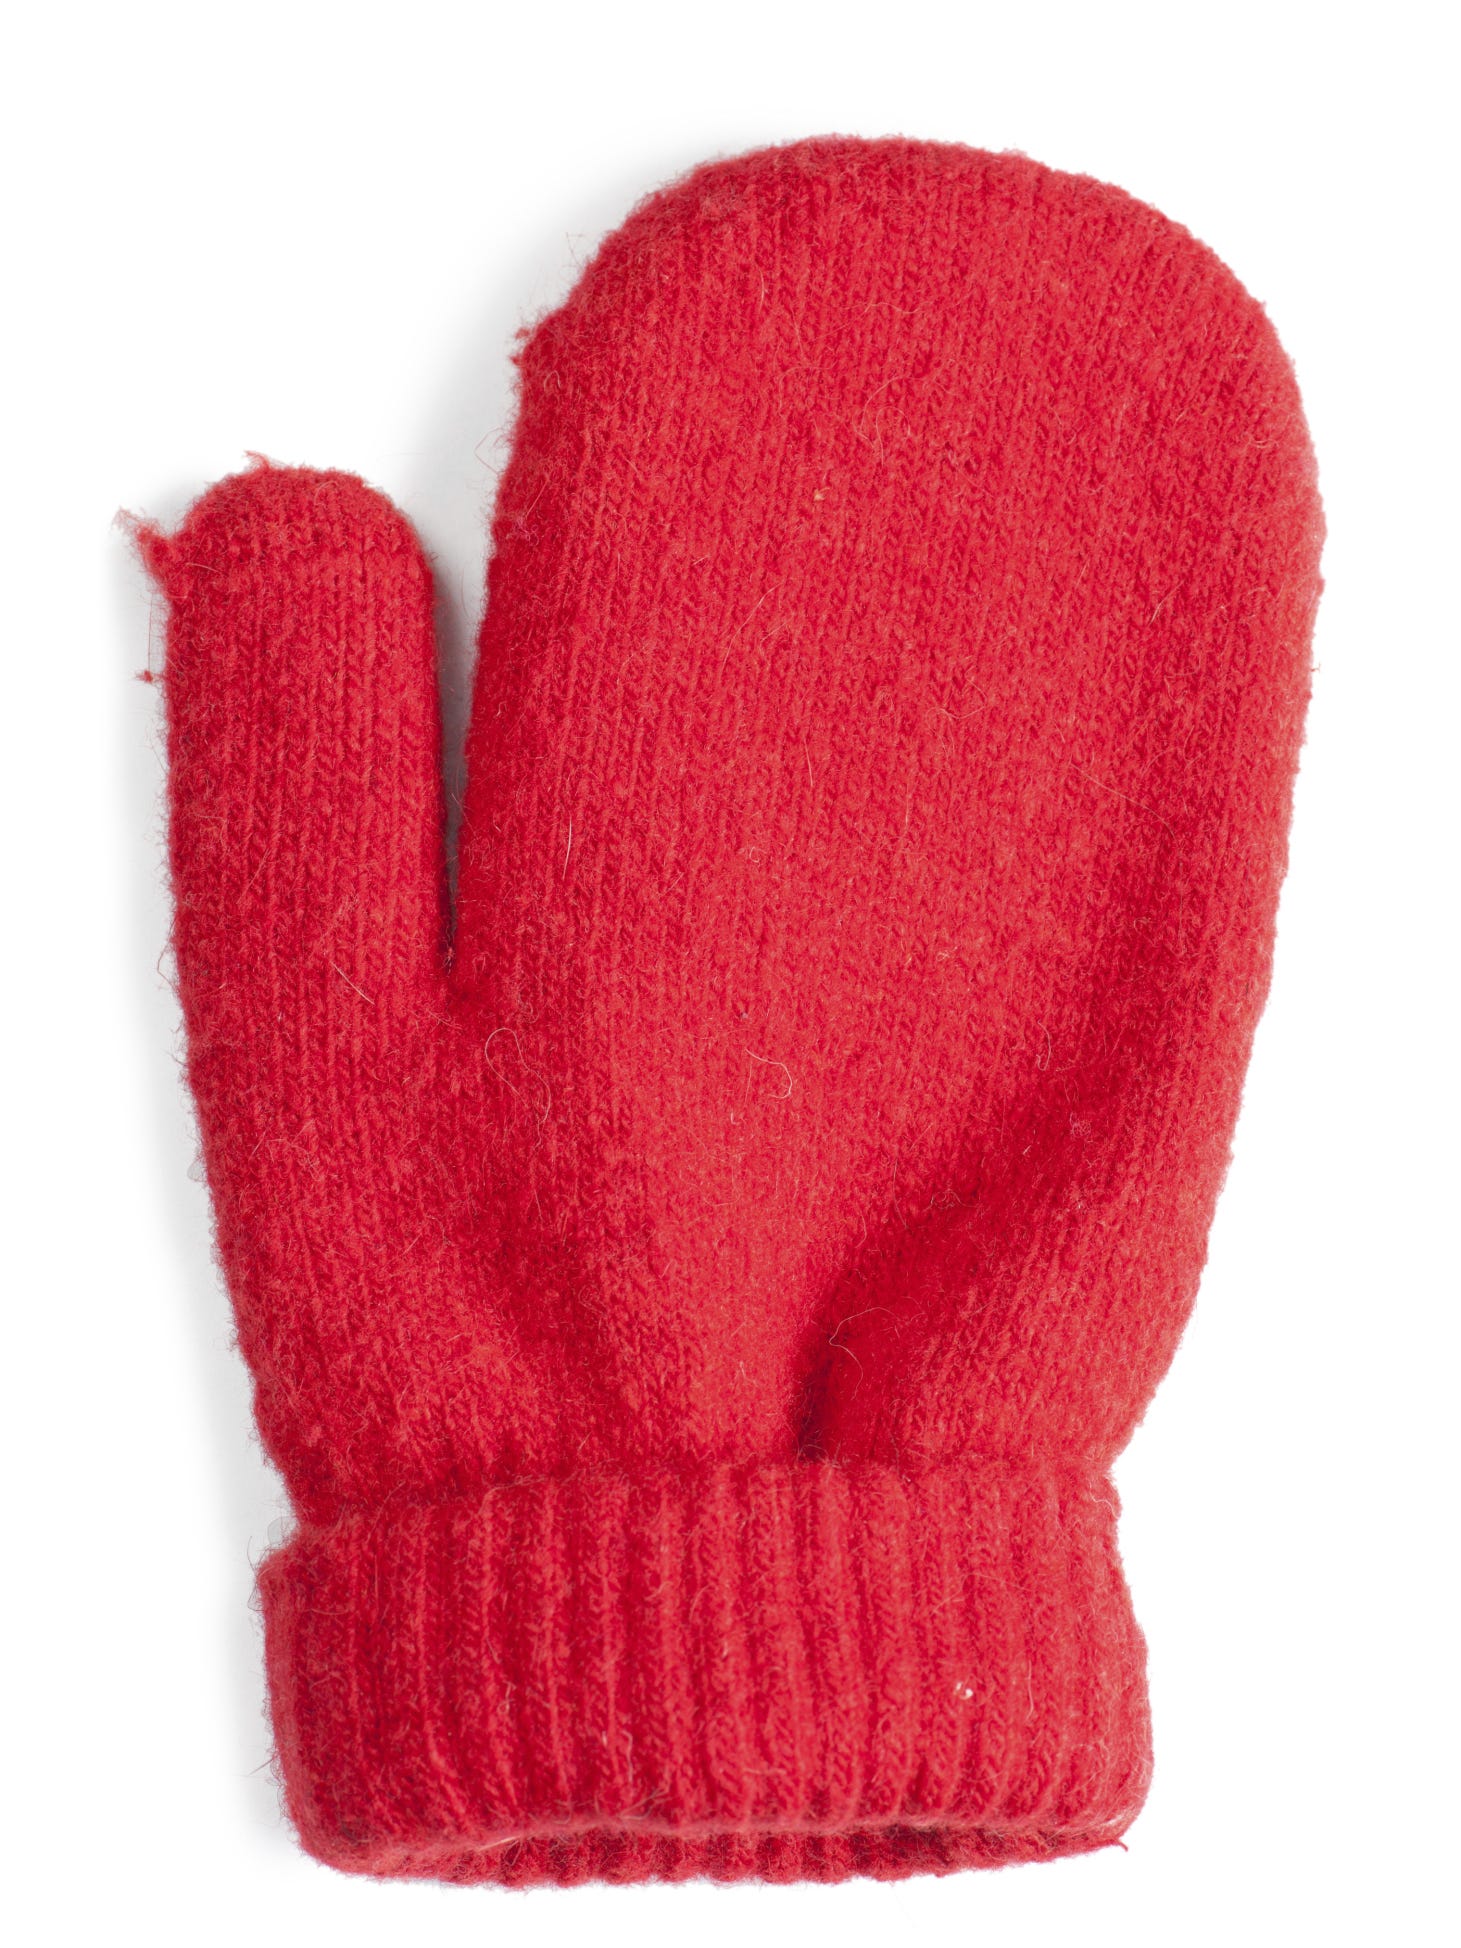 Mittens vs. gloves? Debate rages on